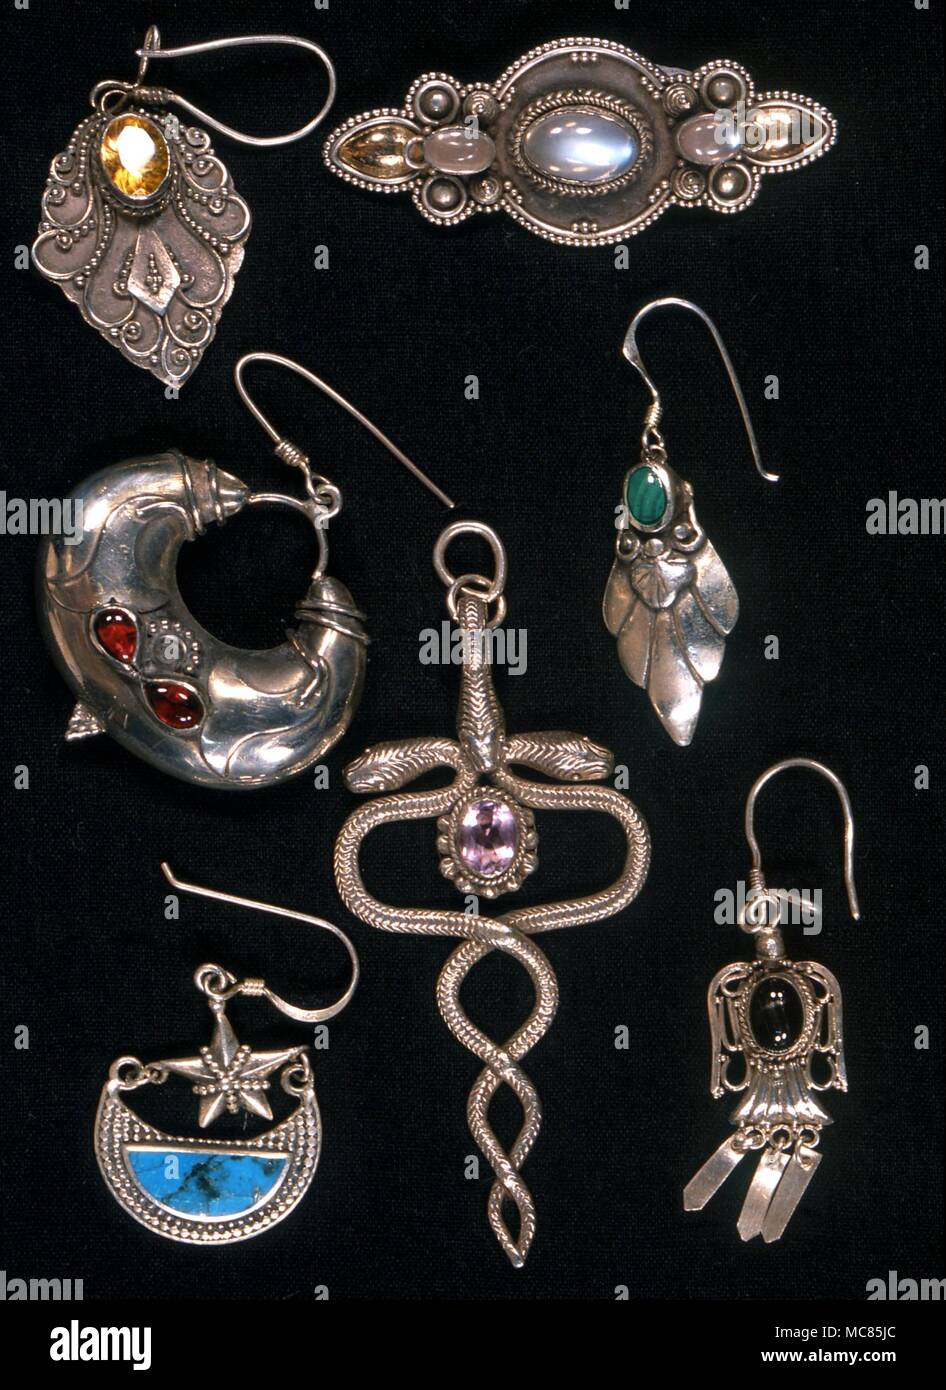 Amulette. Die sieben planetarischen Edelsteine Ohrringe, bestimmt für amuletic getragen zu werden, sowie dekorative Zwecke. Stockfoto